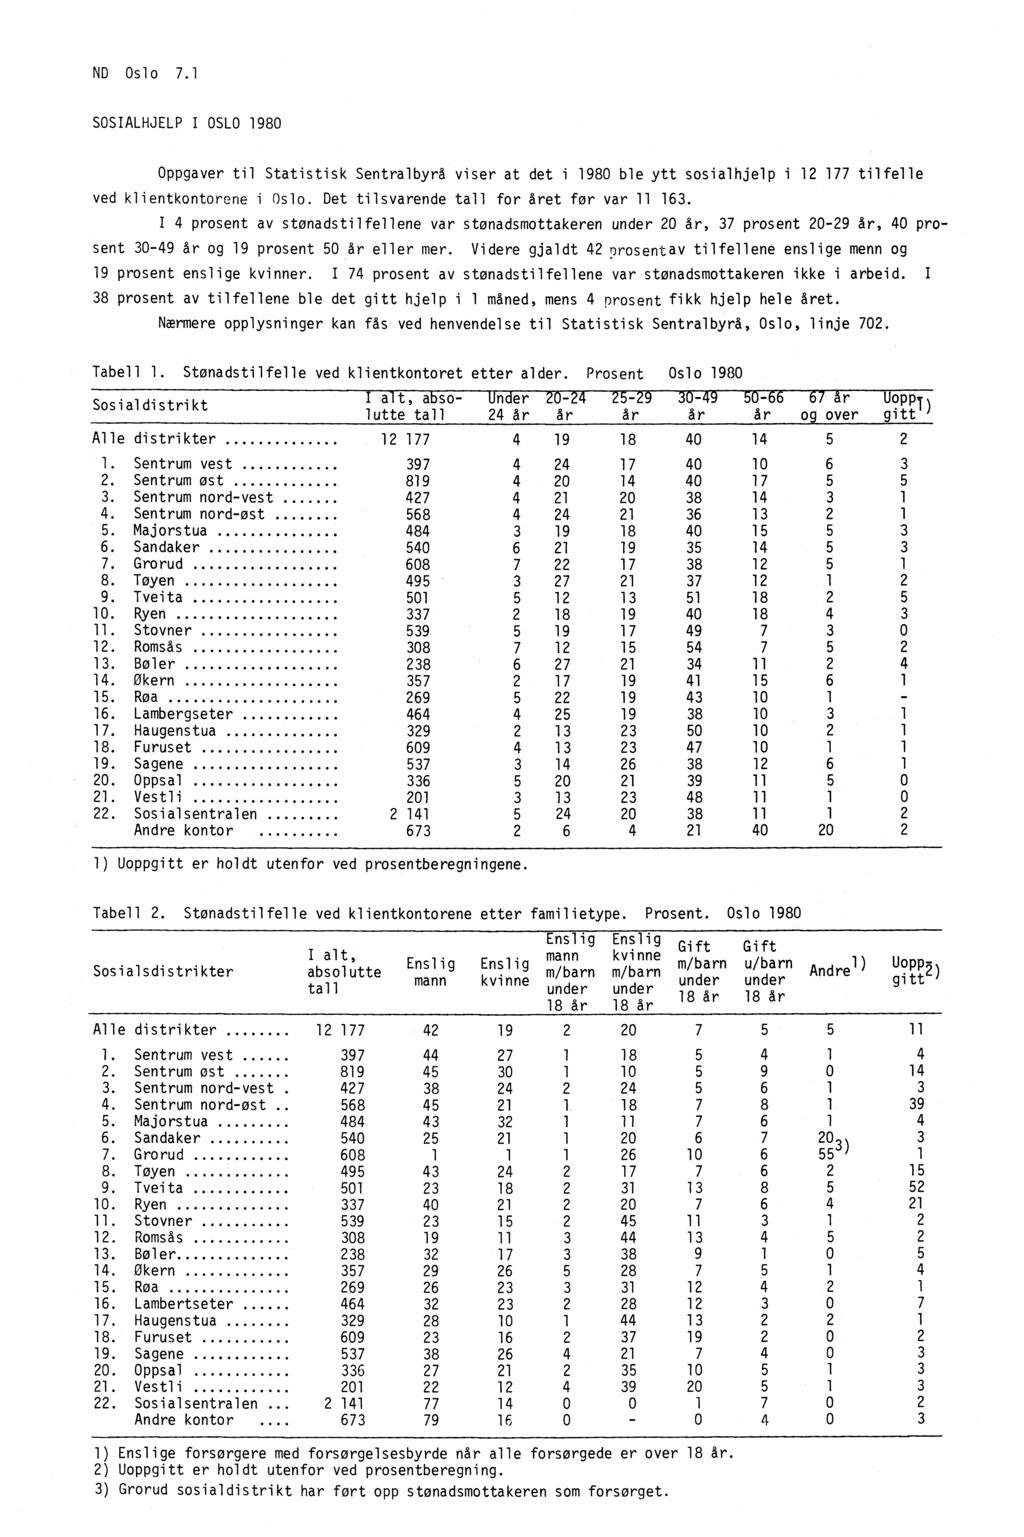 ND Oslo 7.1 SOSIALHJELP I OSLO 1980 Oppgaver til Statistisk Sentralbyrå viser at det i 1980 ble ytt sosialhjelp i 12 177 tilfelle ved klientkontorene i Oslo.